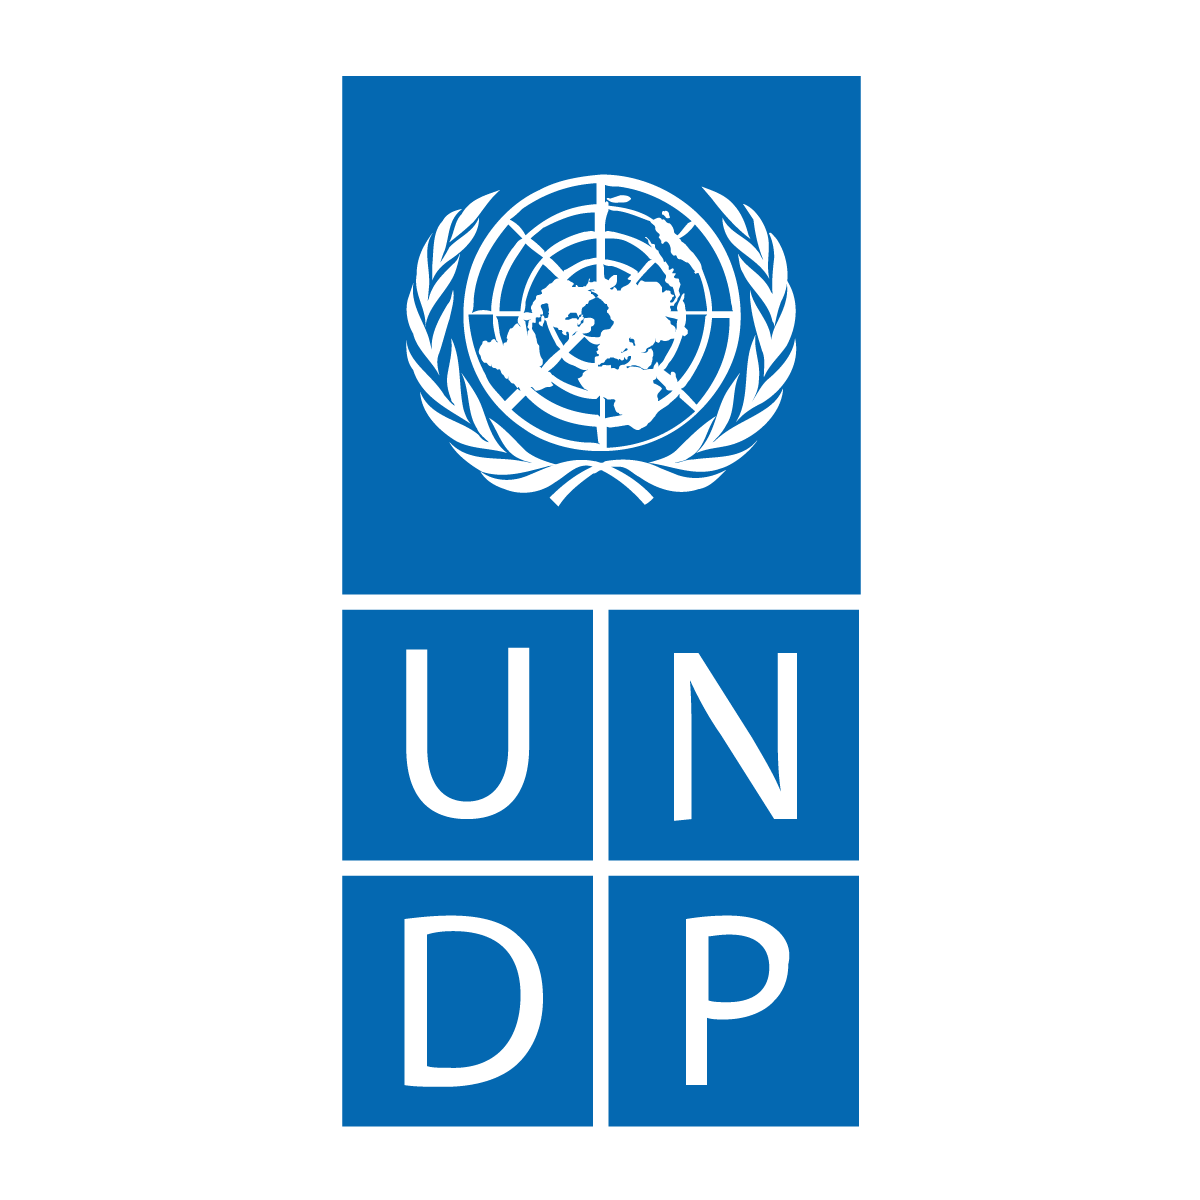 Програма розвитку ООН